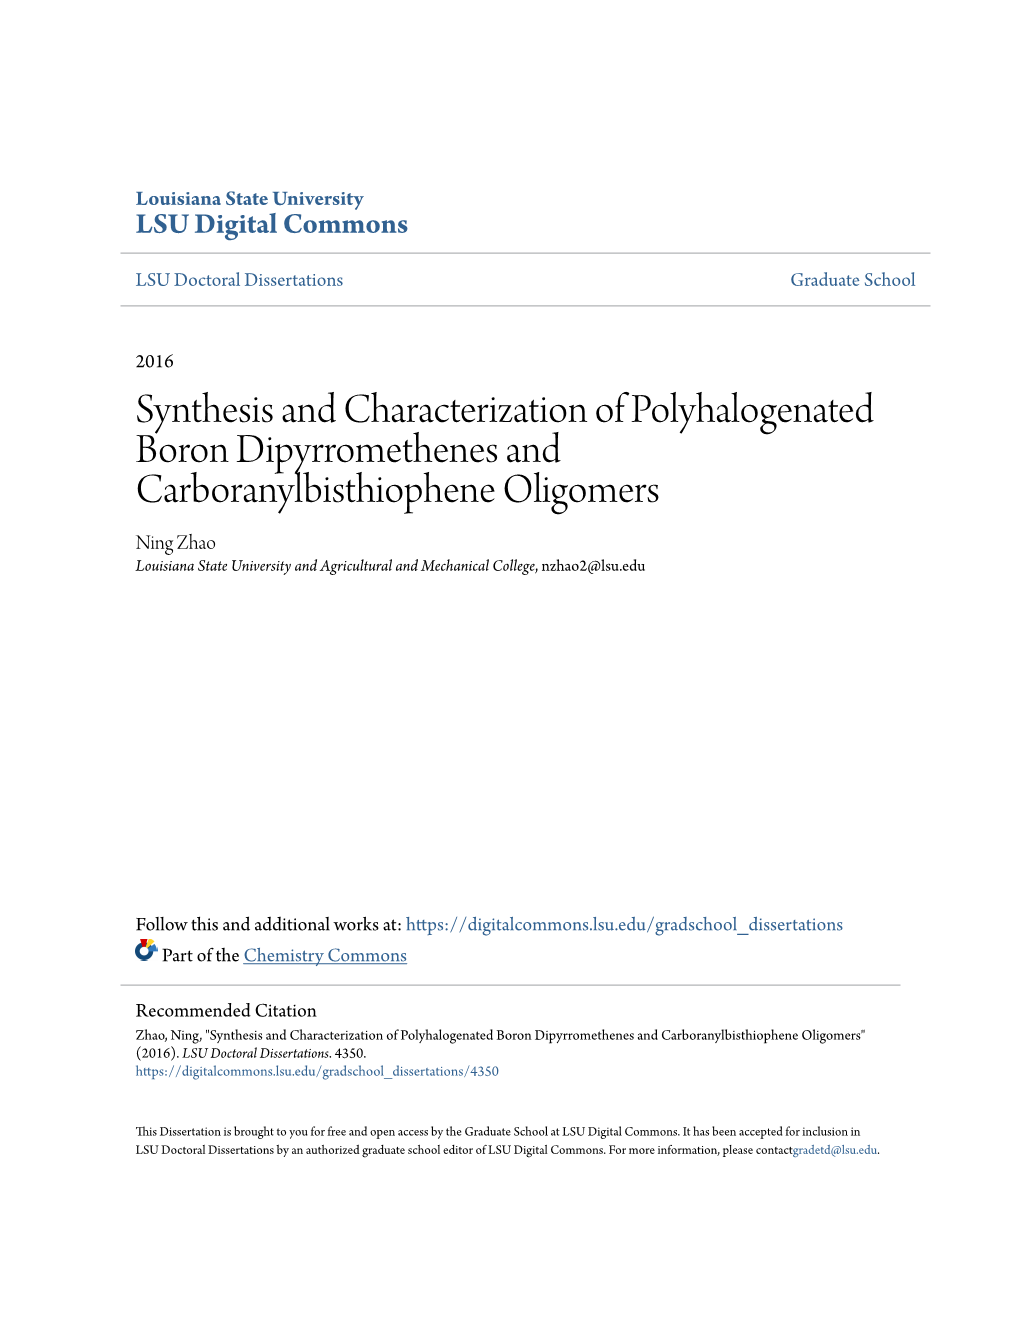 Synthesis and Characterization of Polyhalogenated Boron Dipyrromethenes and Carboranylbisthiophene Oligomers